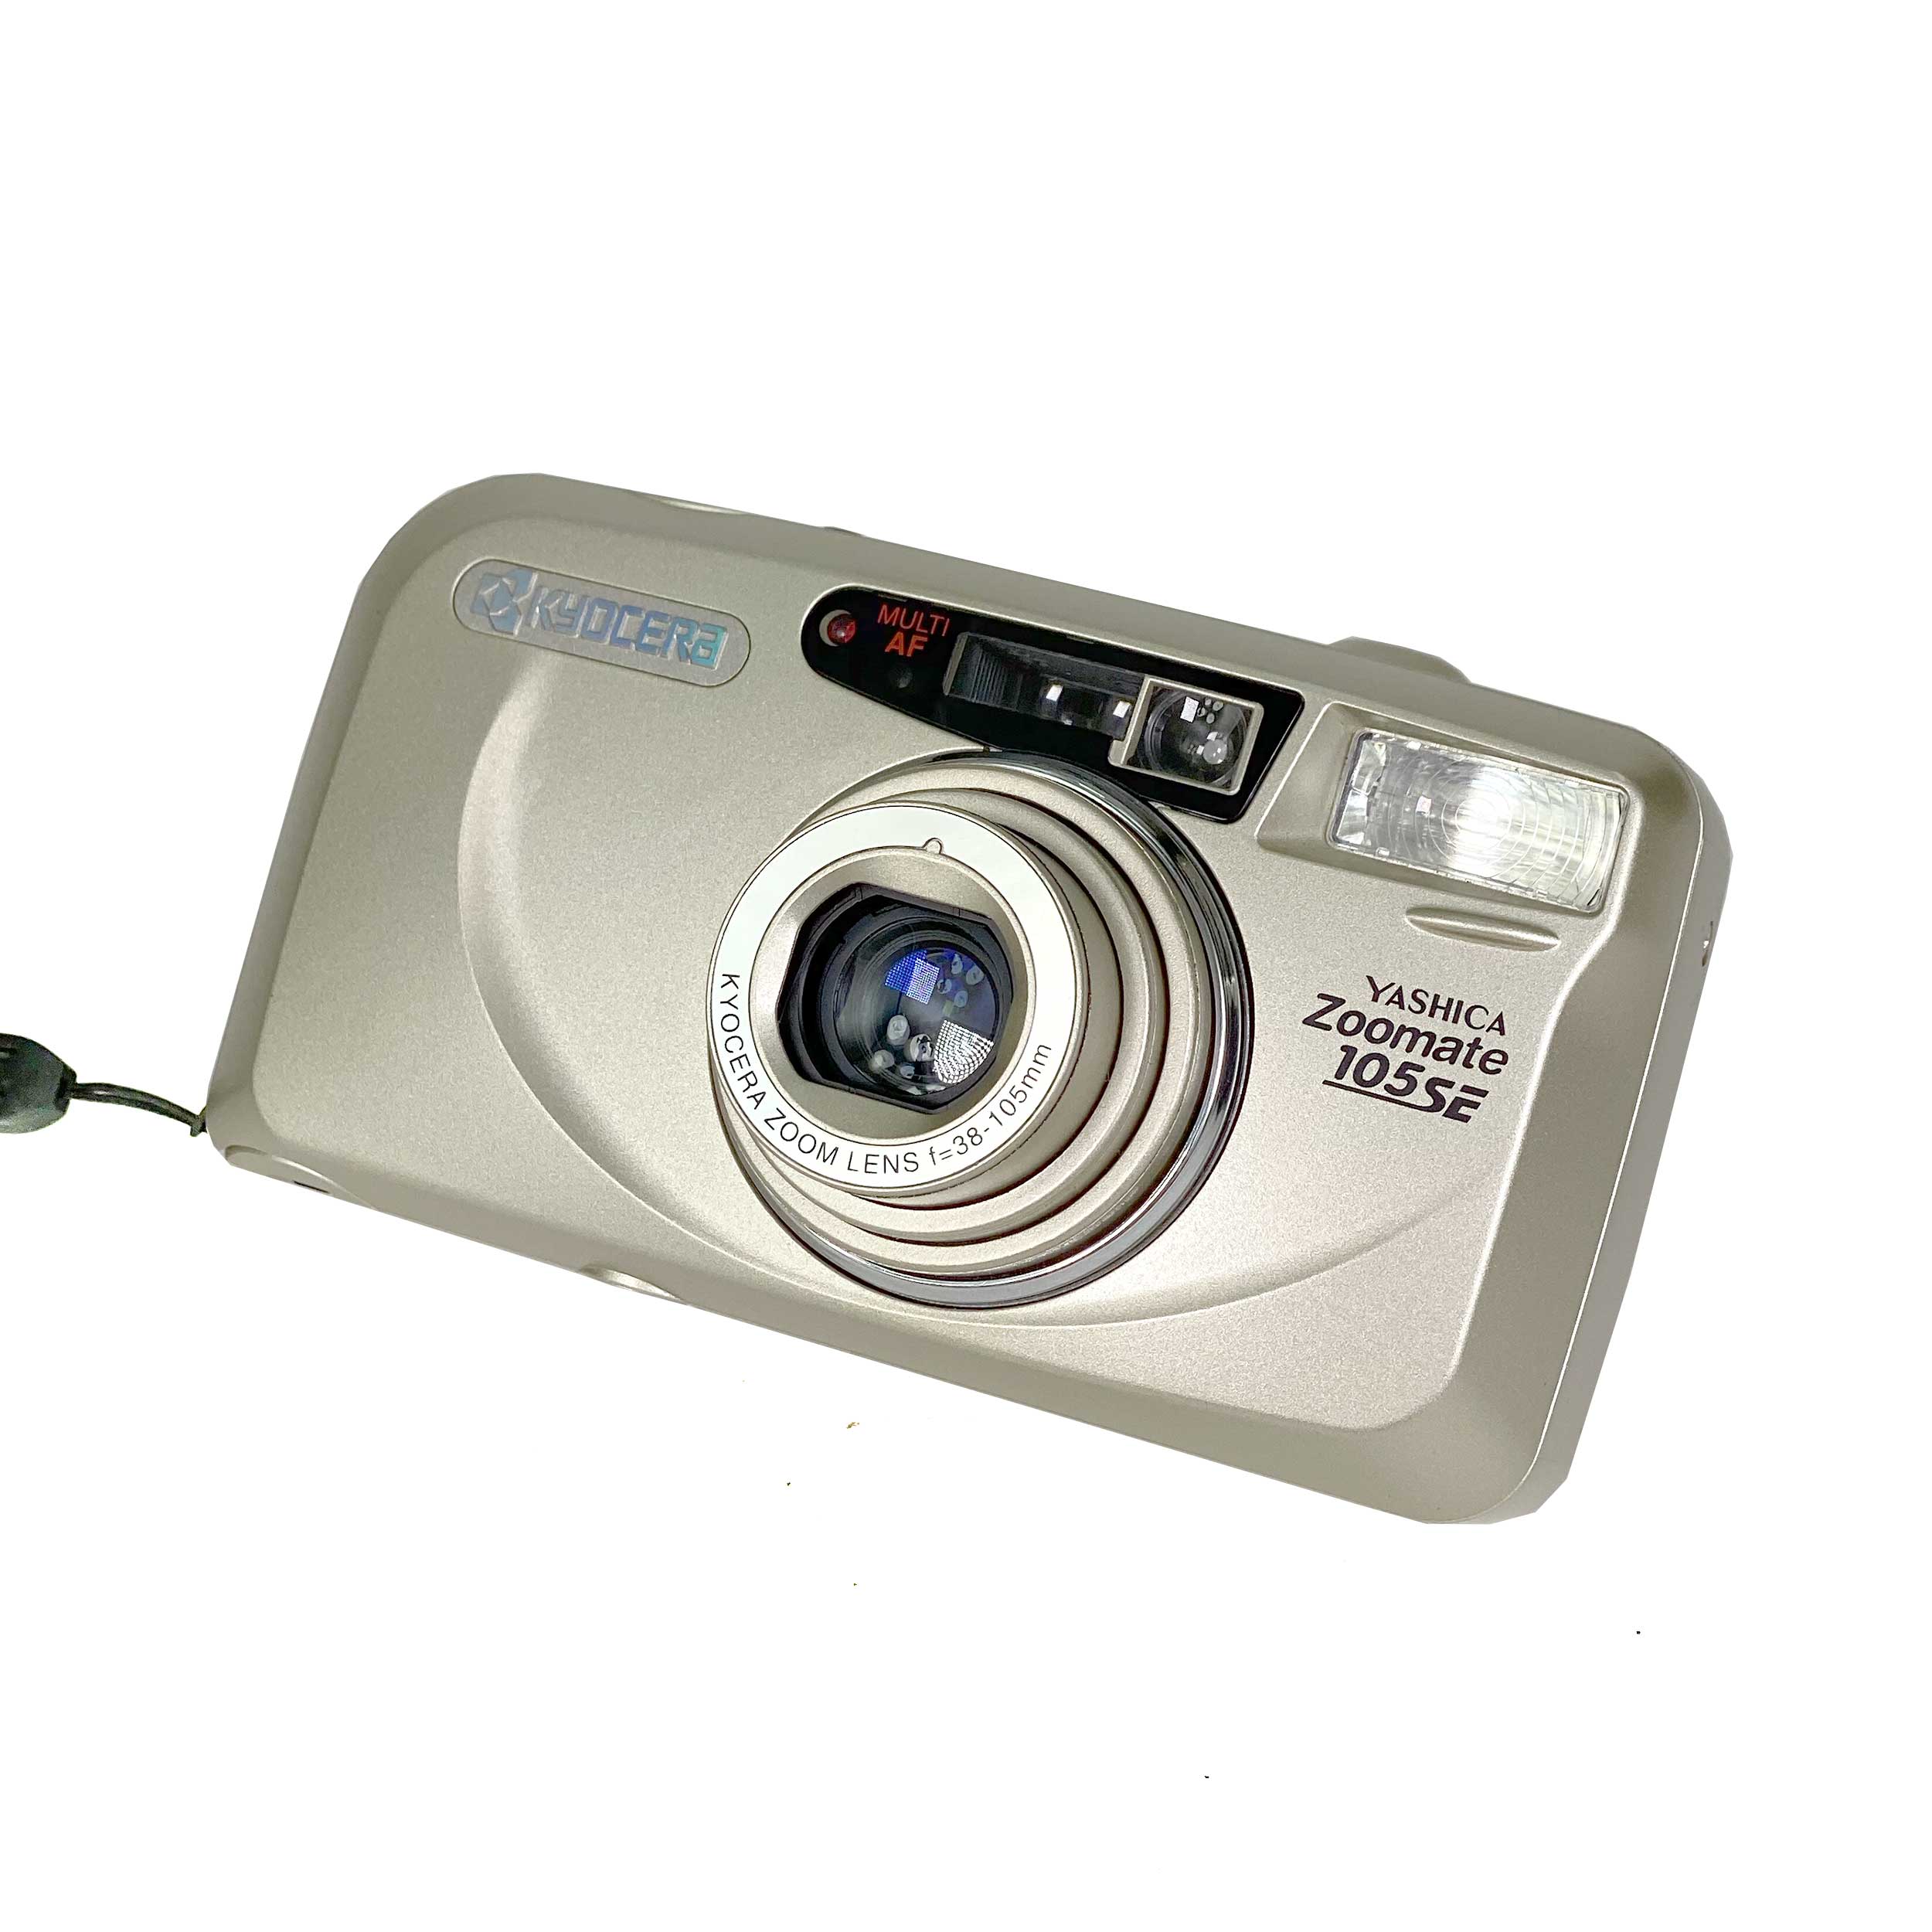 Yashica Zoomate 105 SE – Retro Camera Shop